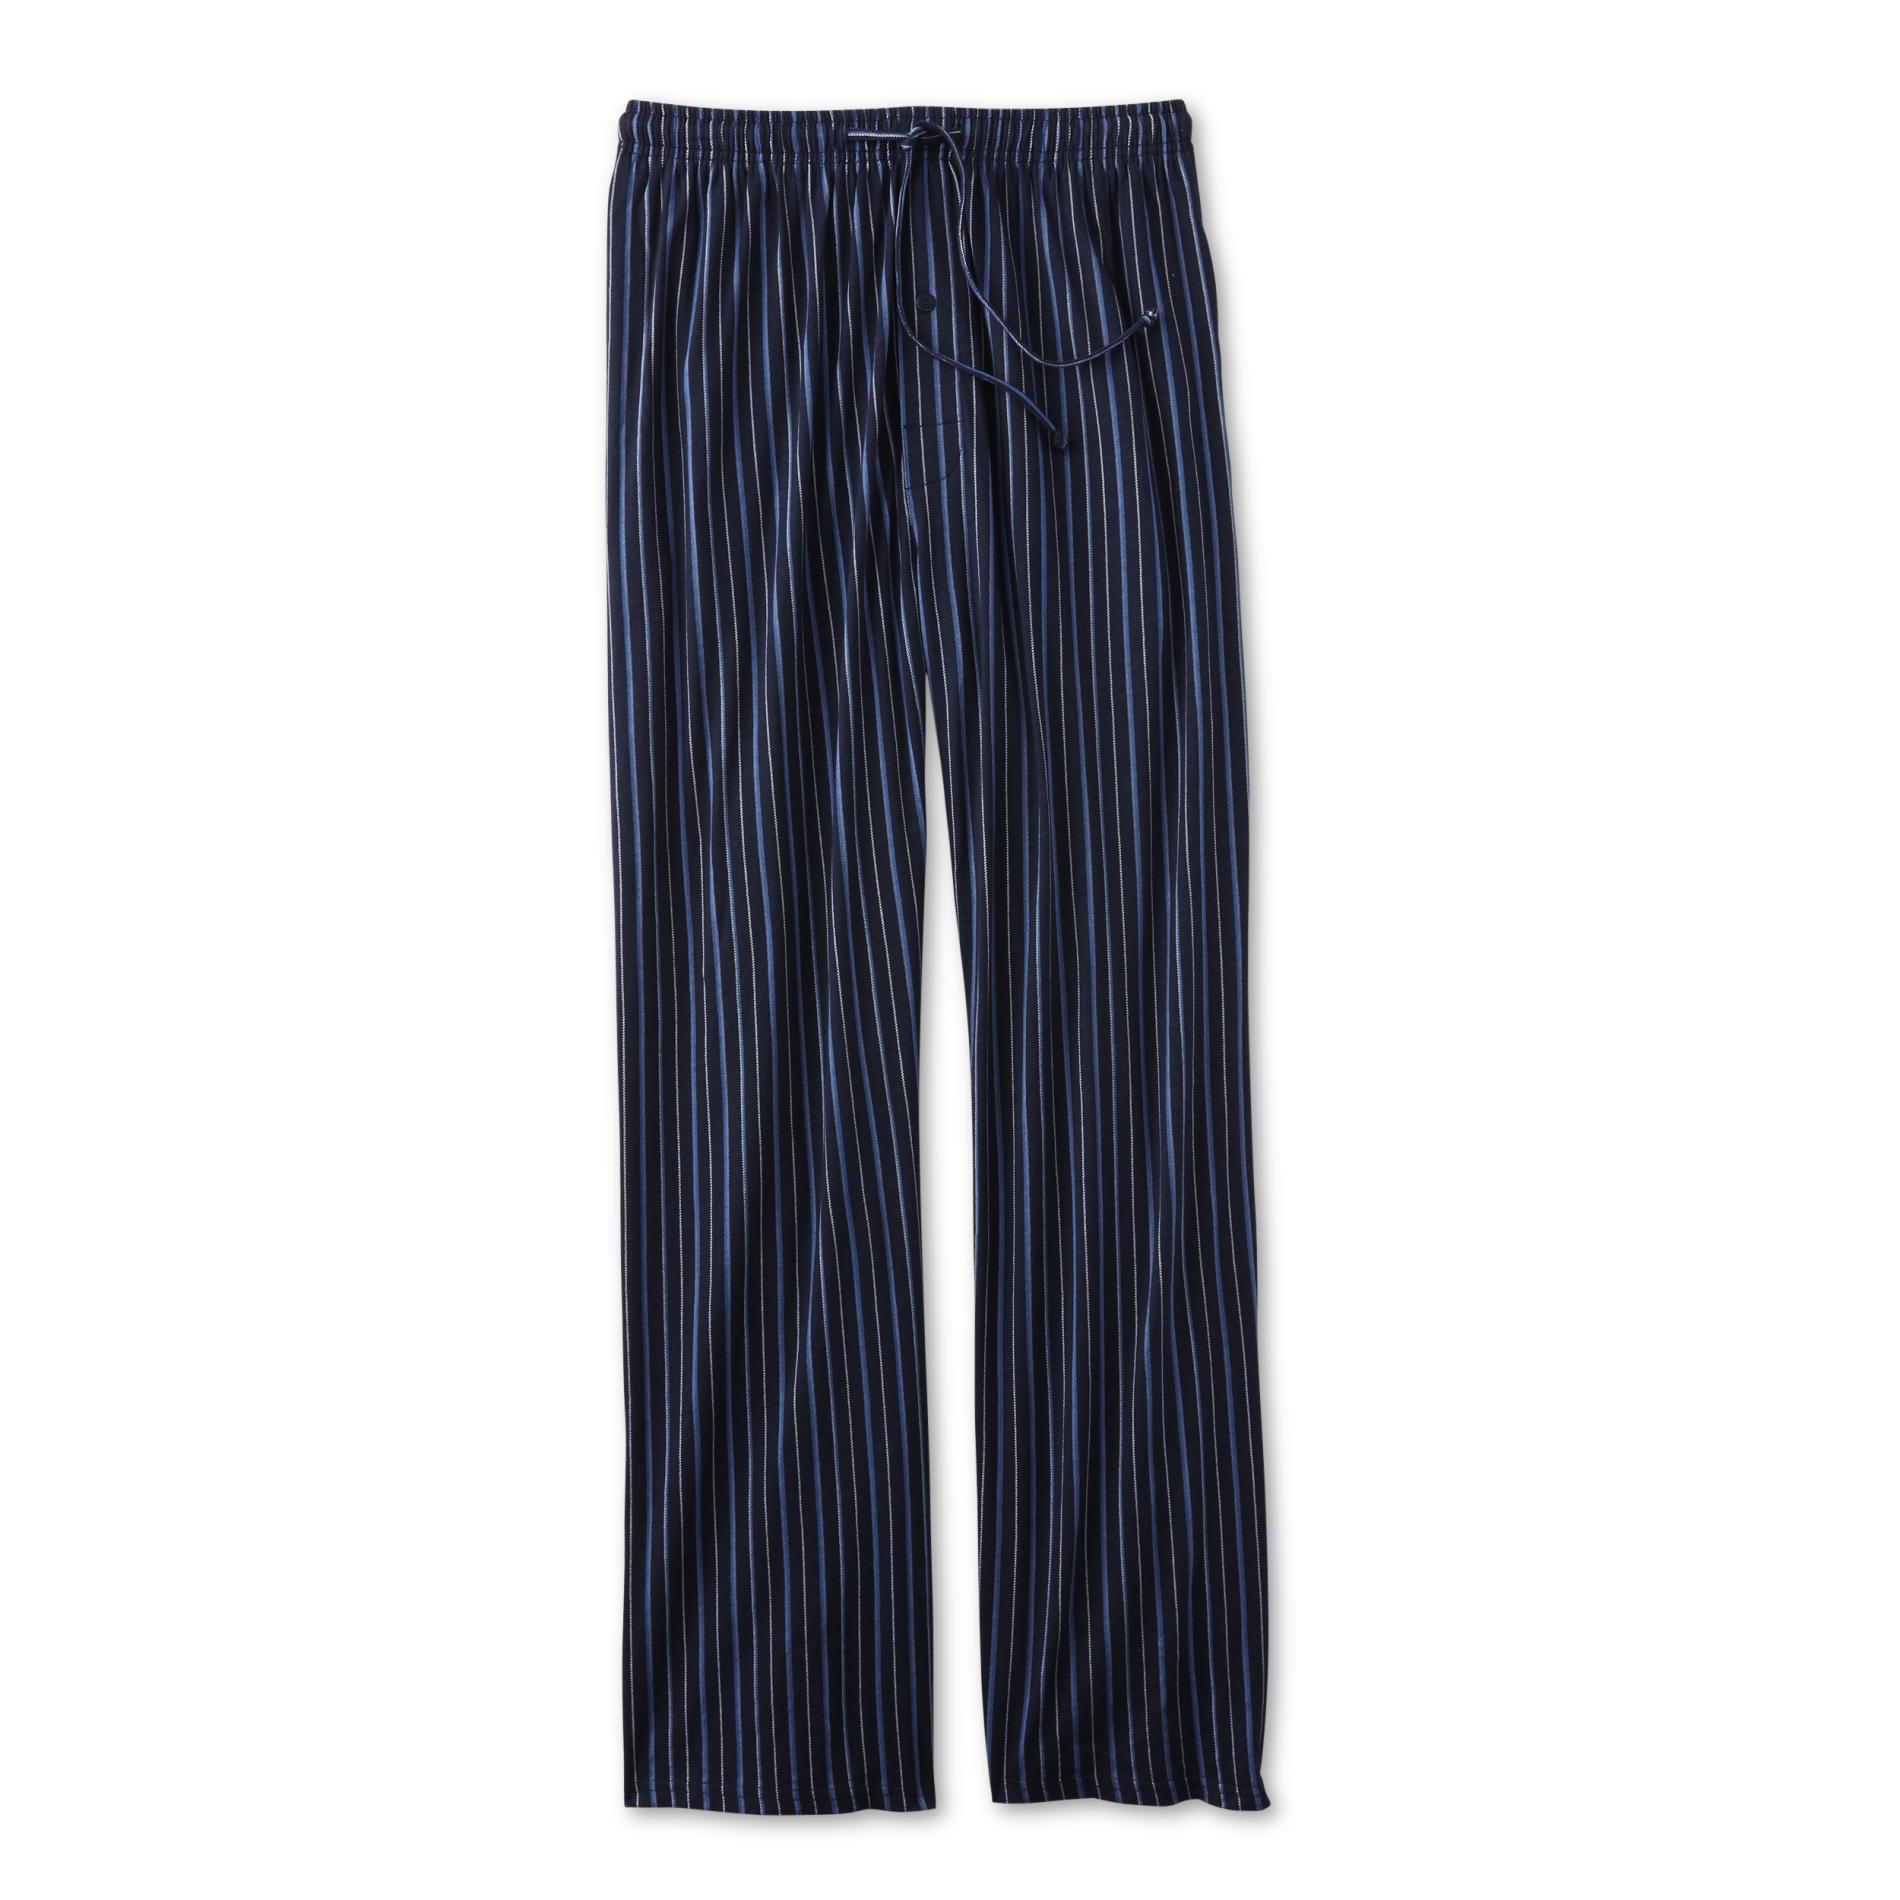 Joe Boxer Men's Pajama Pants - Striped